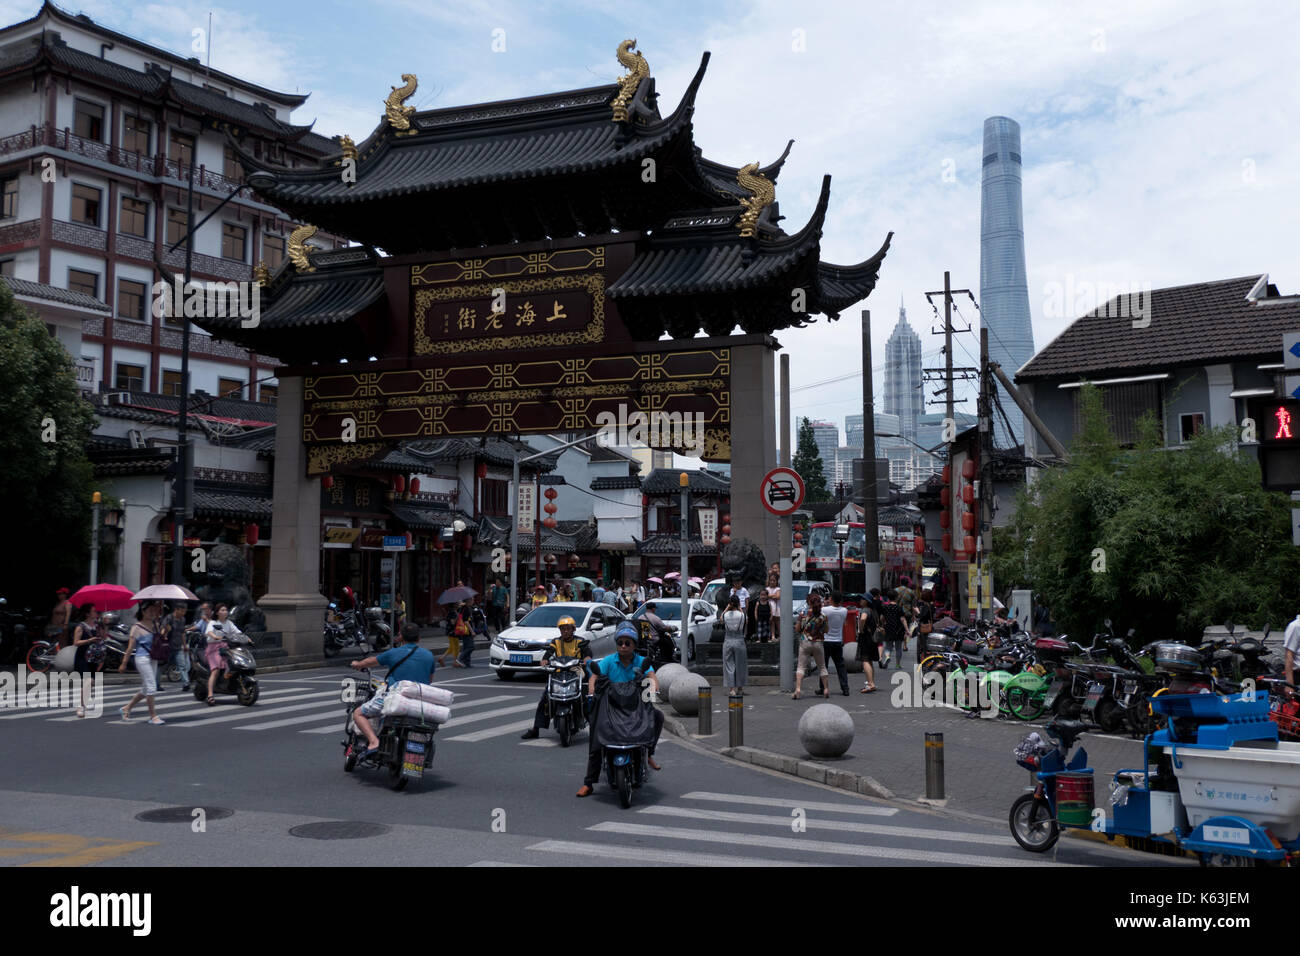 Stadtentwicklung Blick auf Shanghai, China, Asien. Landschaft in der chinesischen Stadt mit modernen und alten Gebäuden, Straßen, Autos, asiatischen Menschen Wandern und Reiten bicy Stockfoto